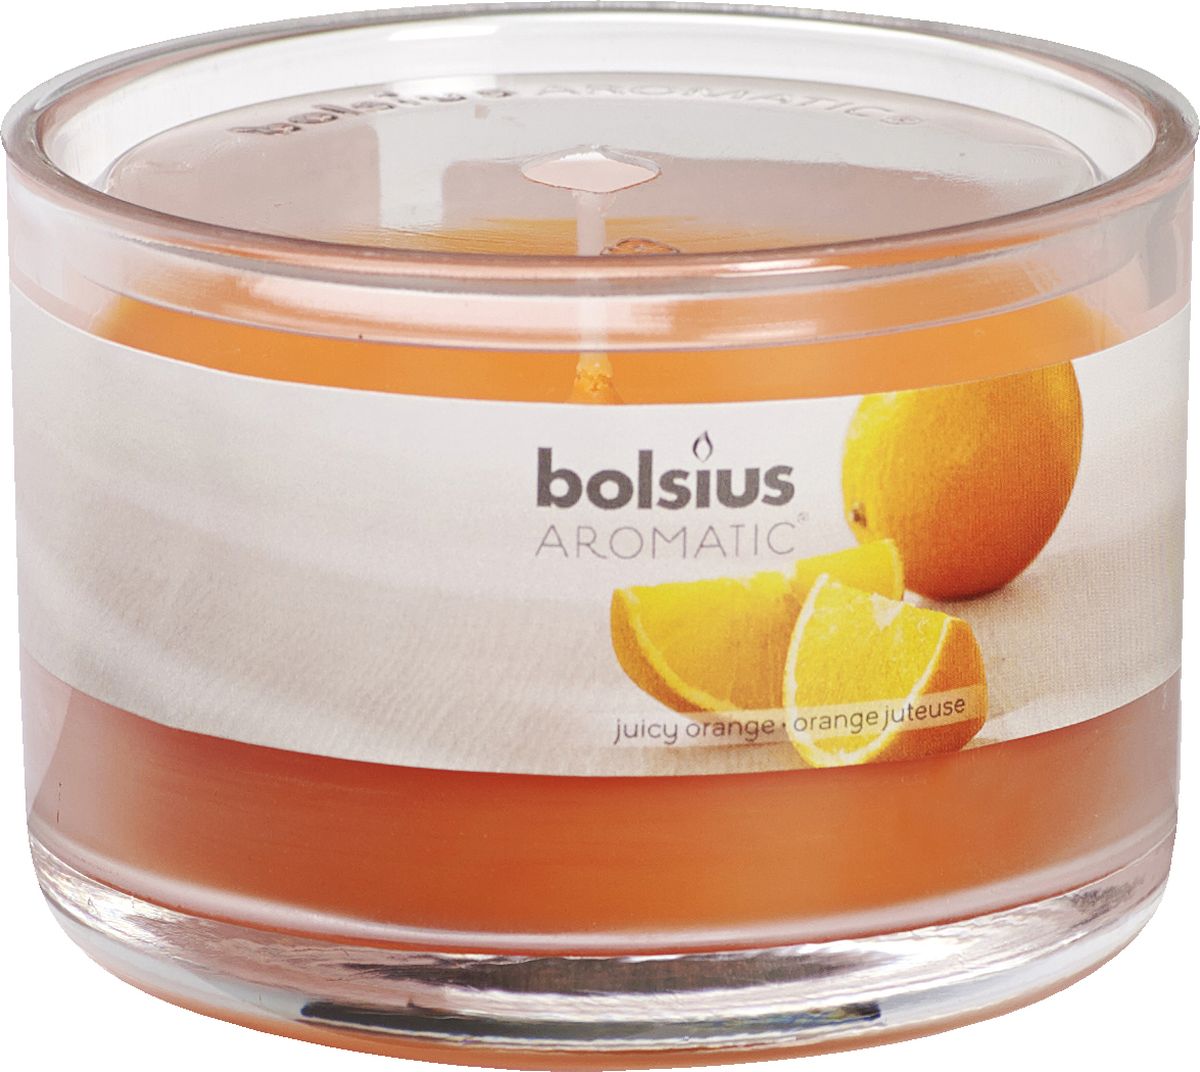 Свеча ароматизированная Bolsius "Апельсин", высота 6,3 см